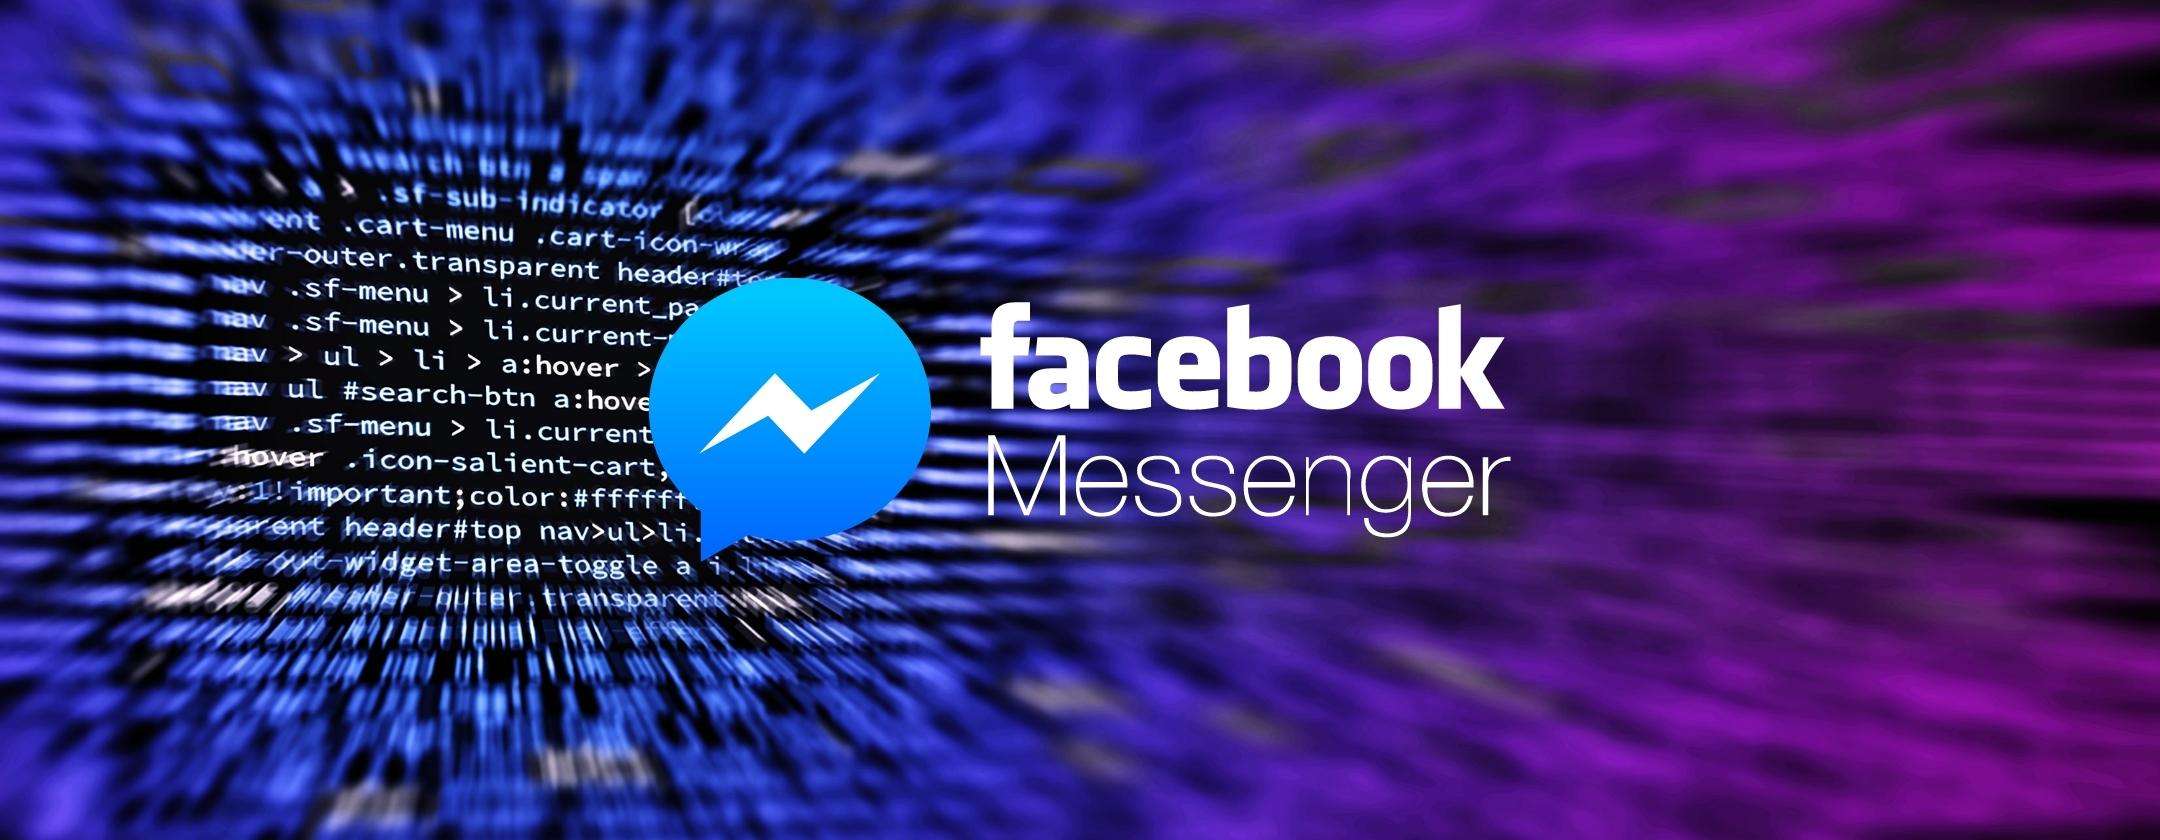 Facebook Messenger: come abilitare la crittografia end-to-end